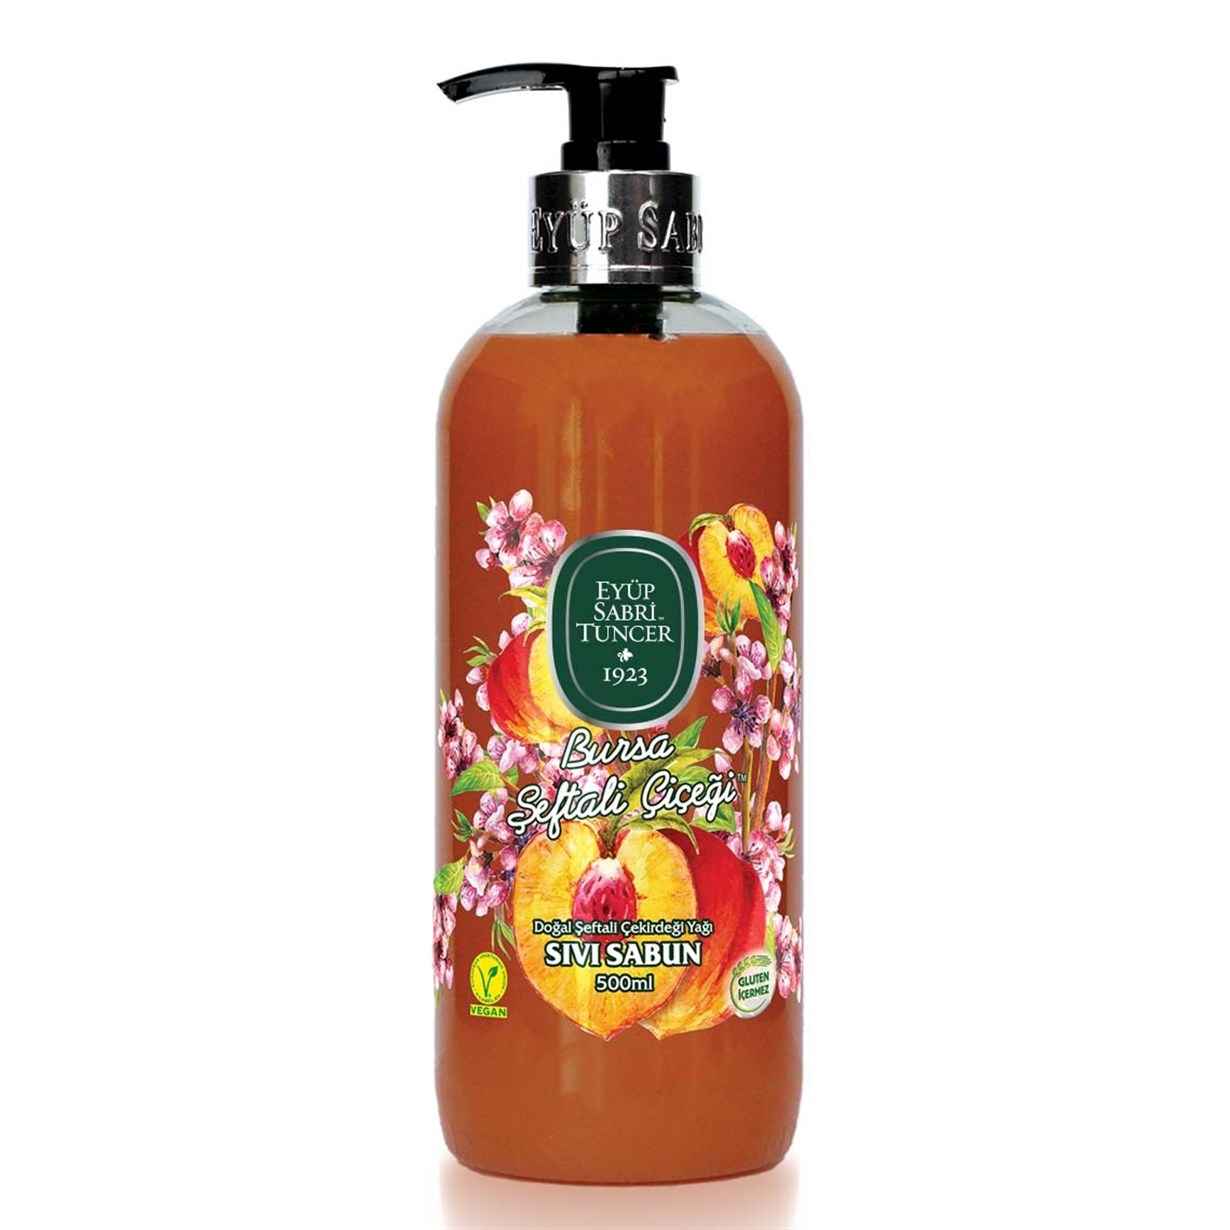 EST Bursa Peach Blossom Natural Peach Seed Oil Soap